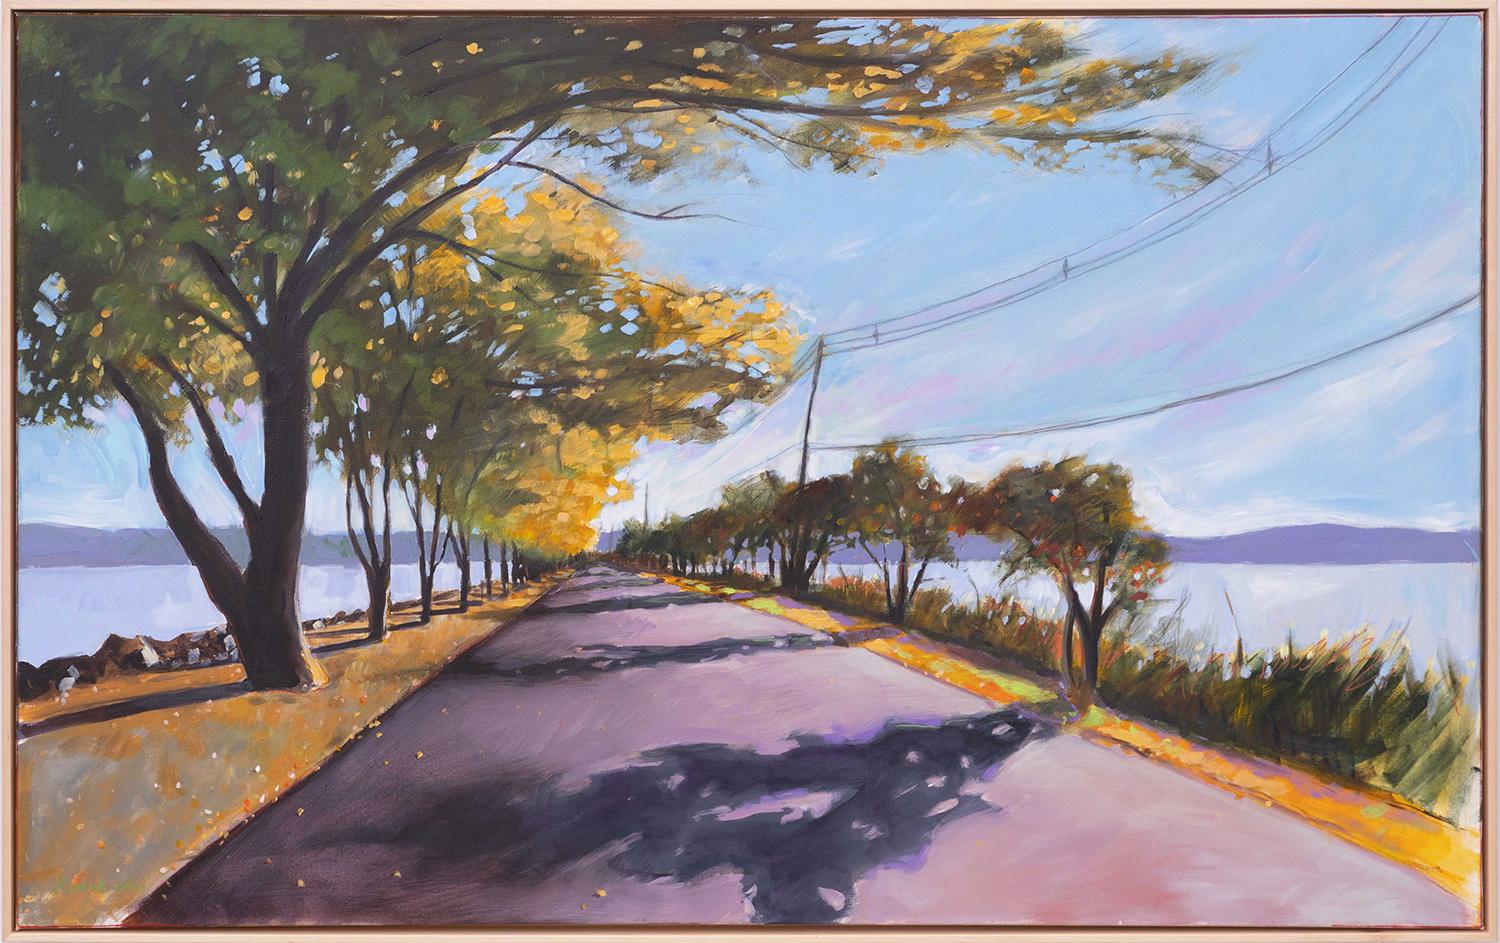 James Kimak Landscape Painting - The Pier, October (Colorful Contemporary Hopper-esque Cape Cod Landscape)